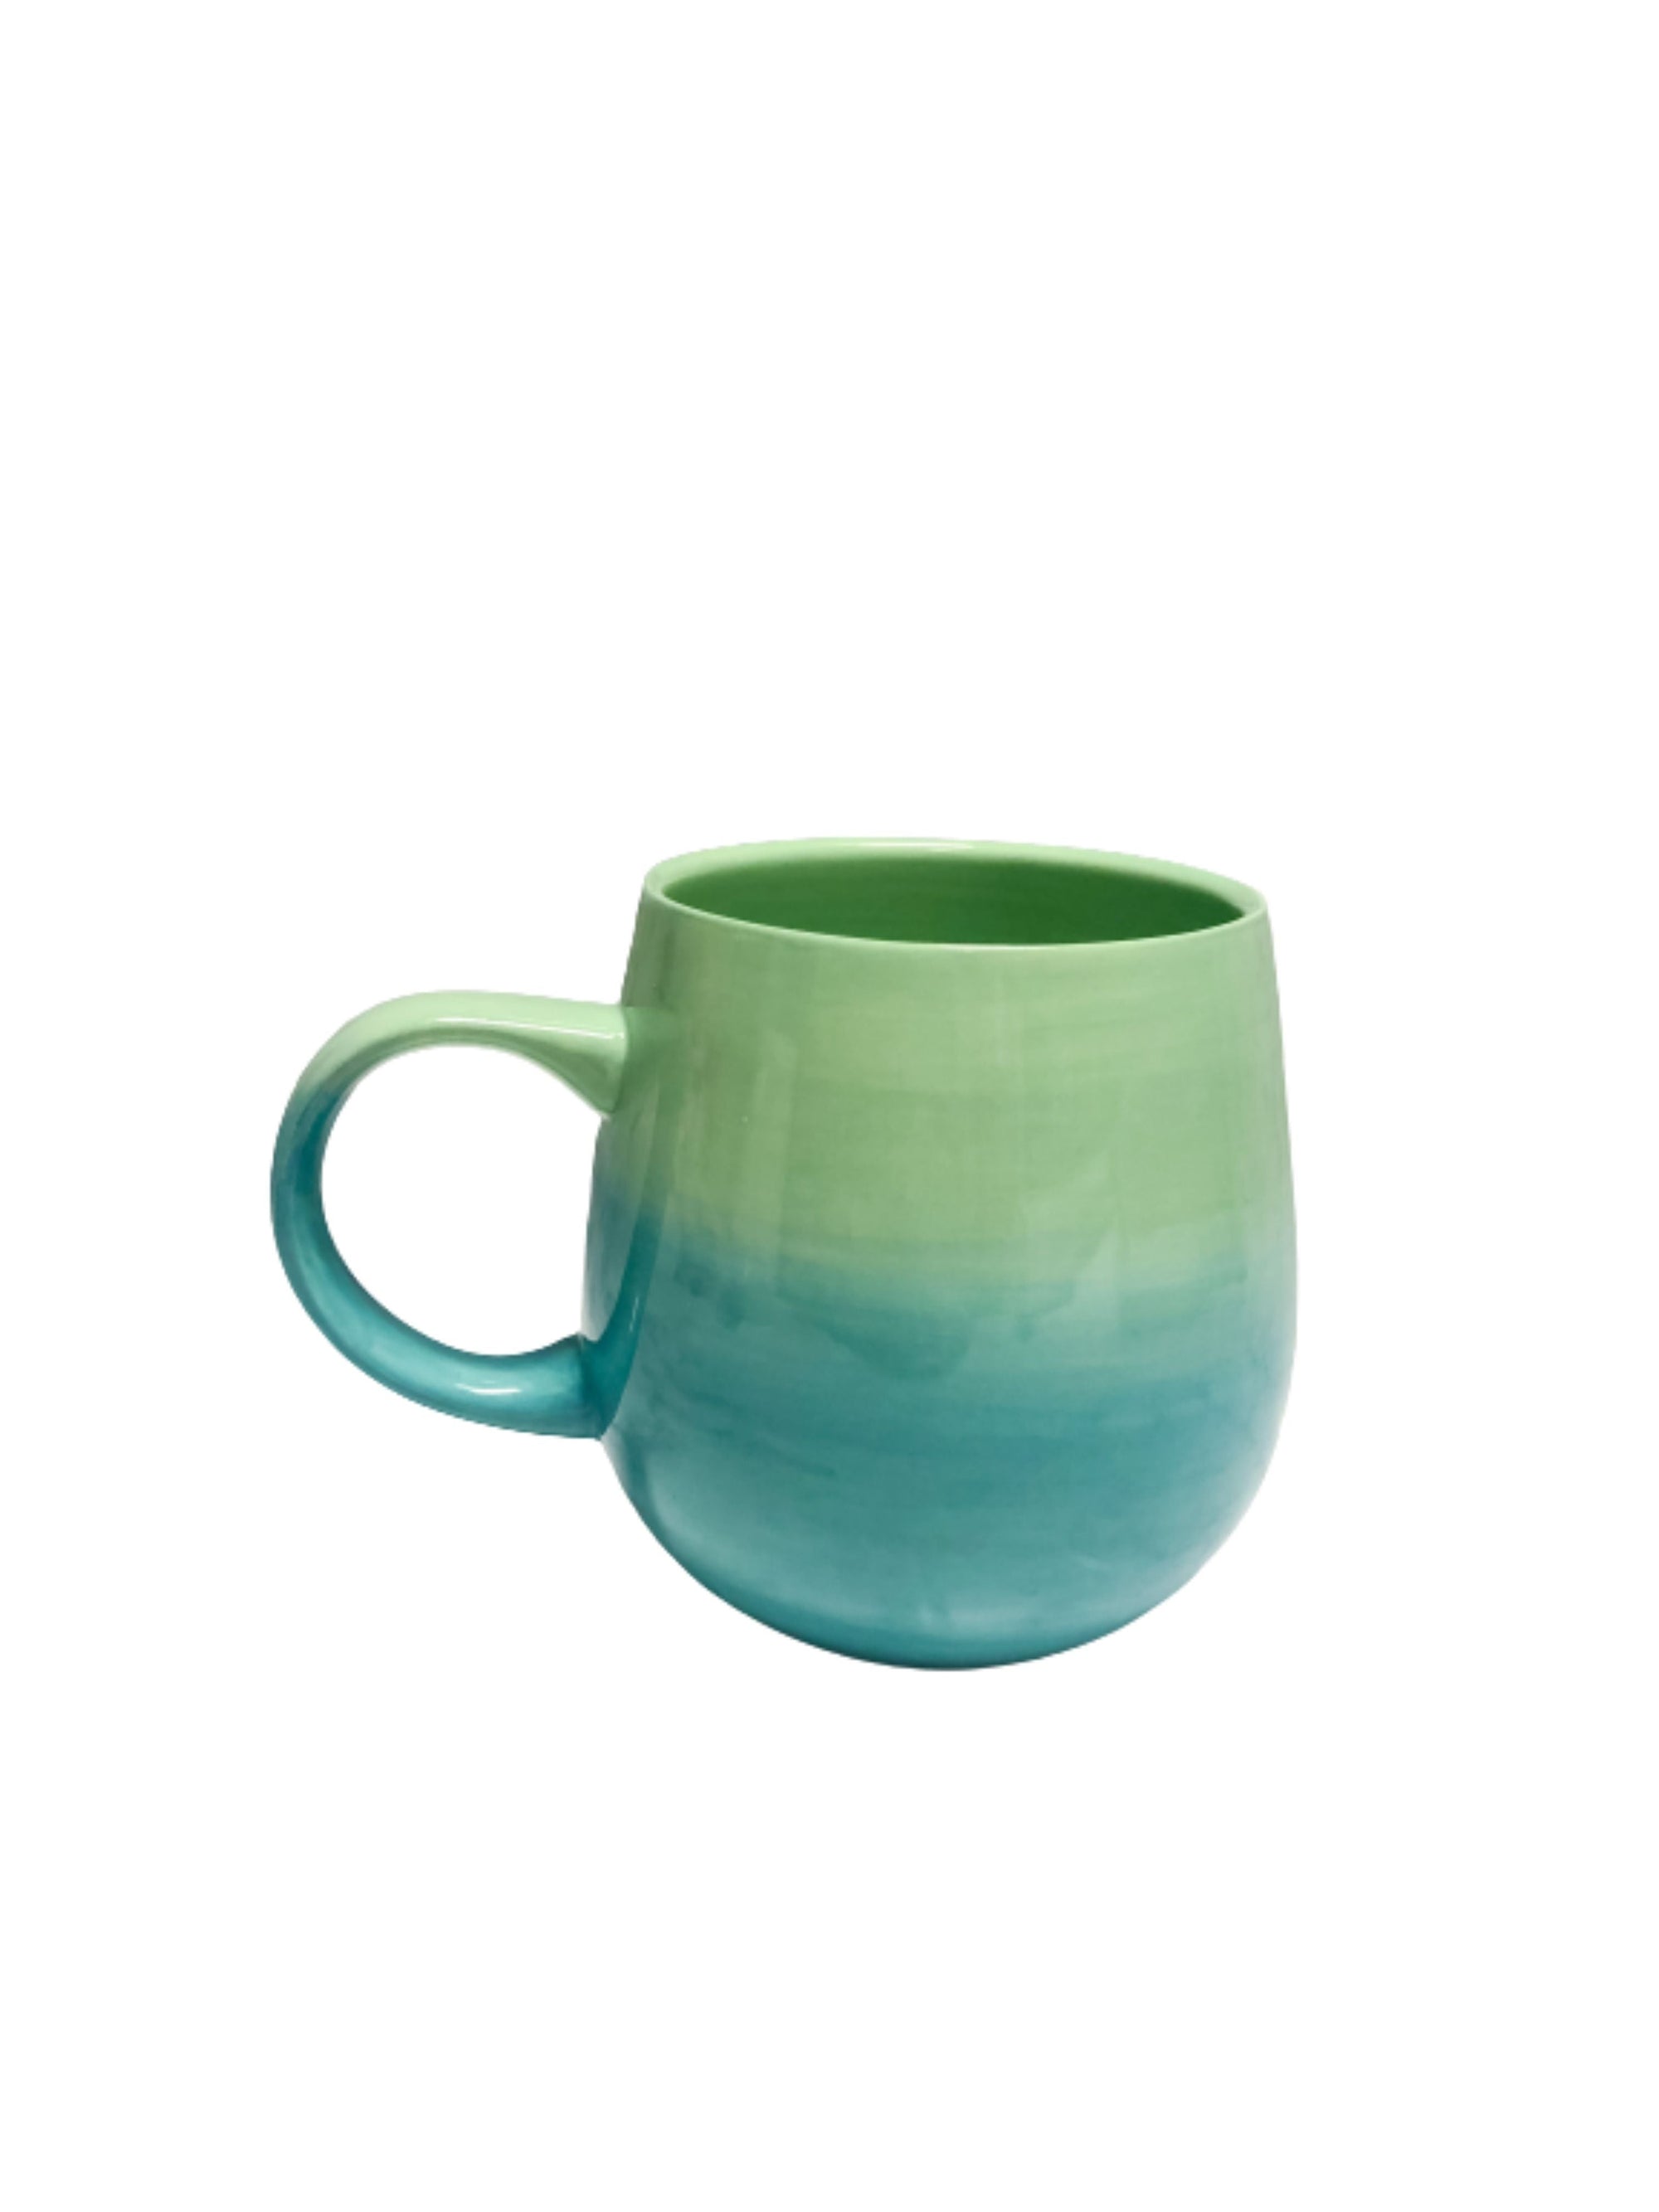 boutique pensacola mugs save lives mug